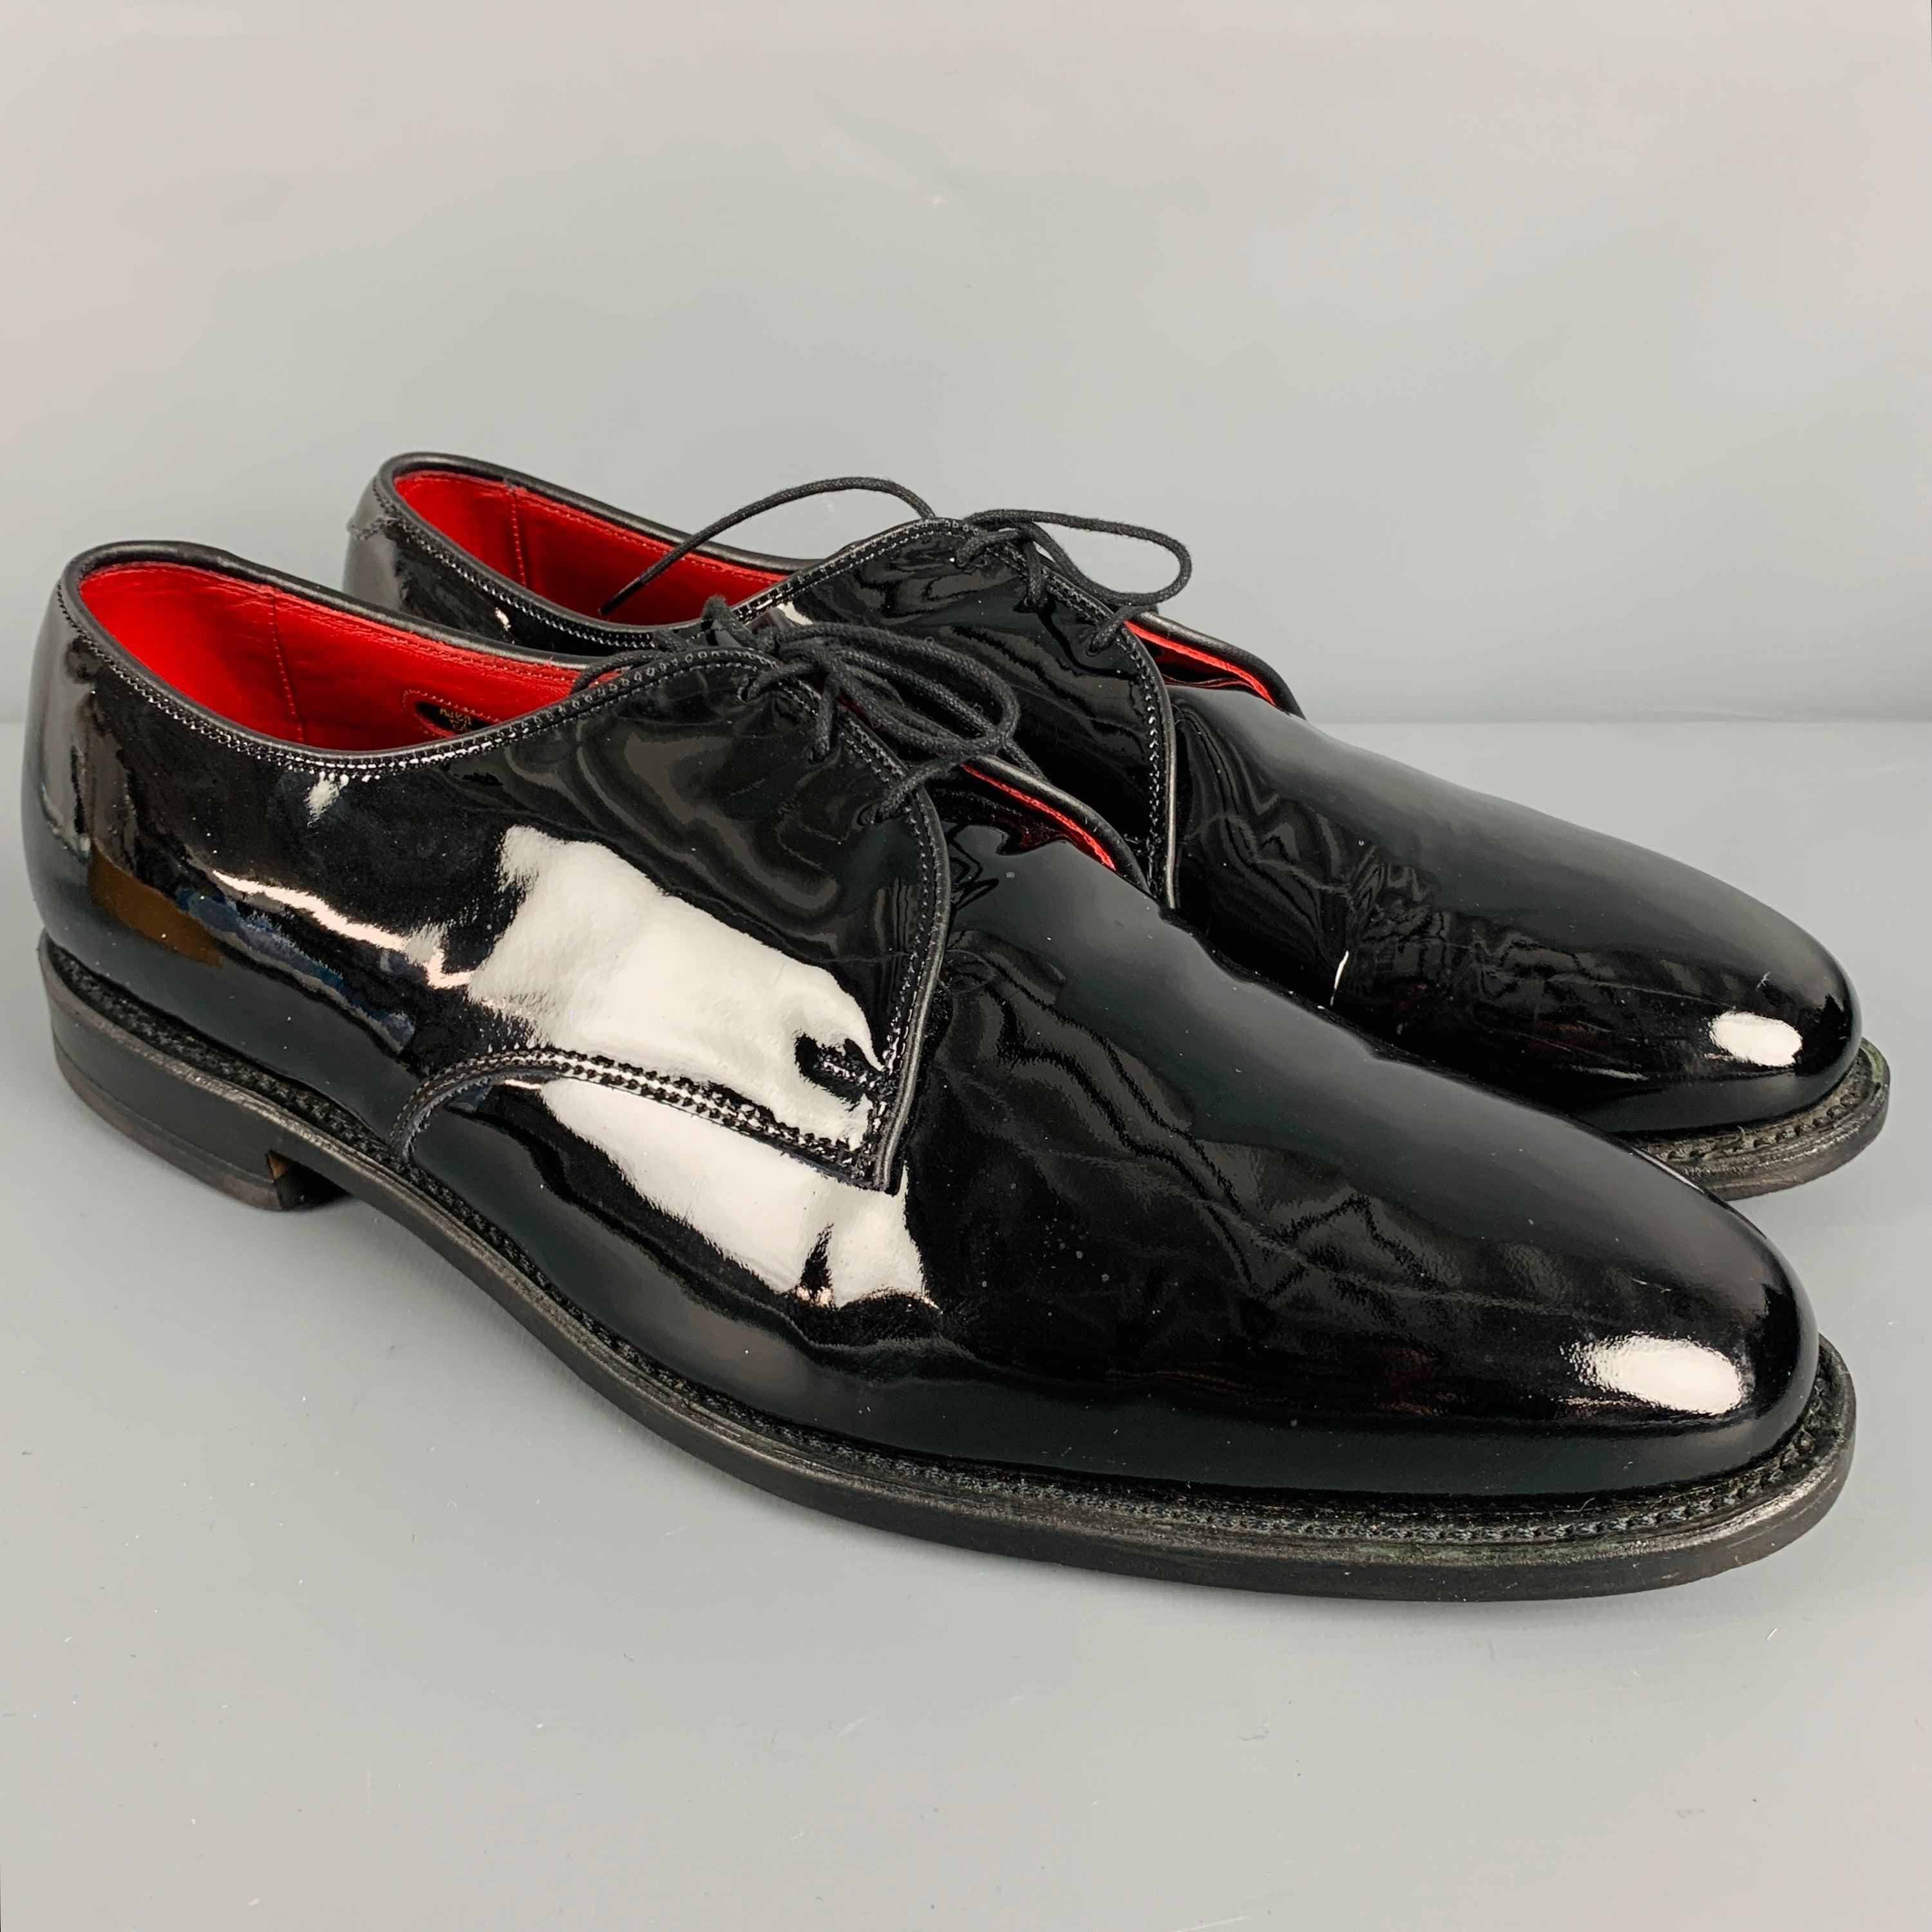 ALLEN EDMONDS Schuhe
aus schwarzem Lackleder mit einem Schnürverschluss. Wird mit Box geliefert. Made in USA. sehr guter gebrauchter Zustand. Leichte Gebrauchsspuren. 

Markiert:   13 D 5304 0000064Außensohle: 13 x 4,25 Zoll 
  
  
 
Referenz-Nr.: